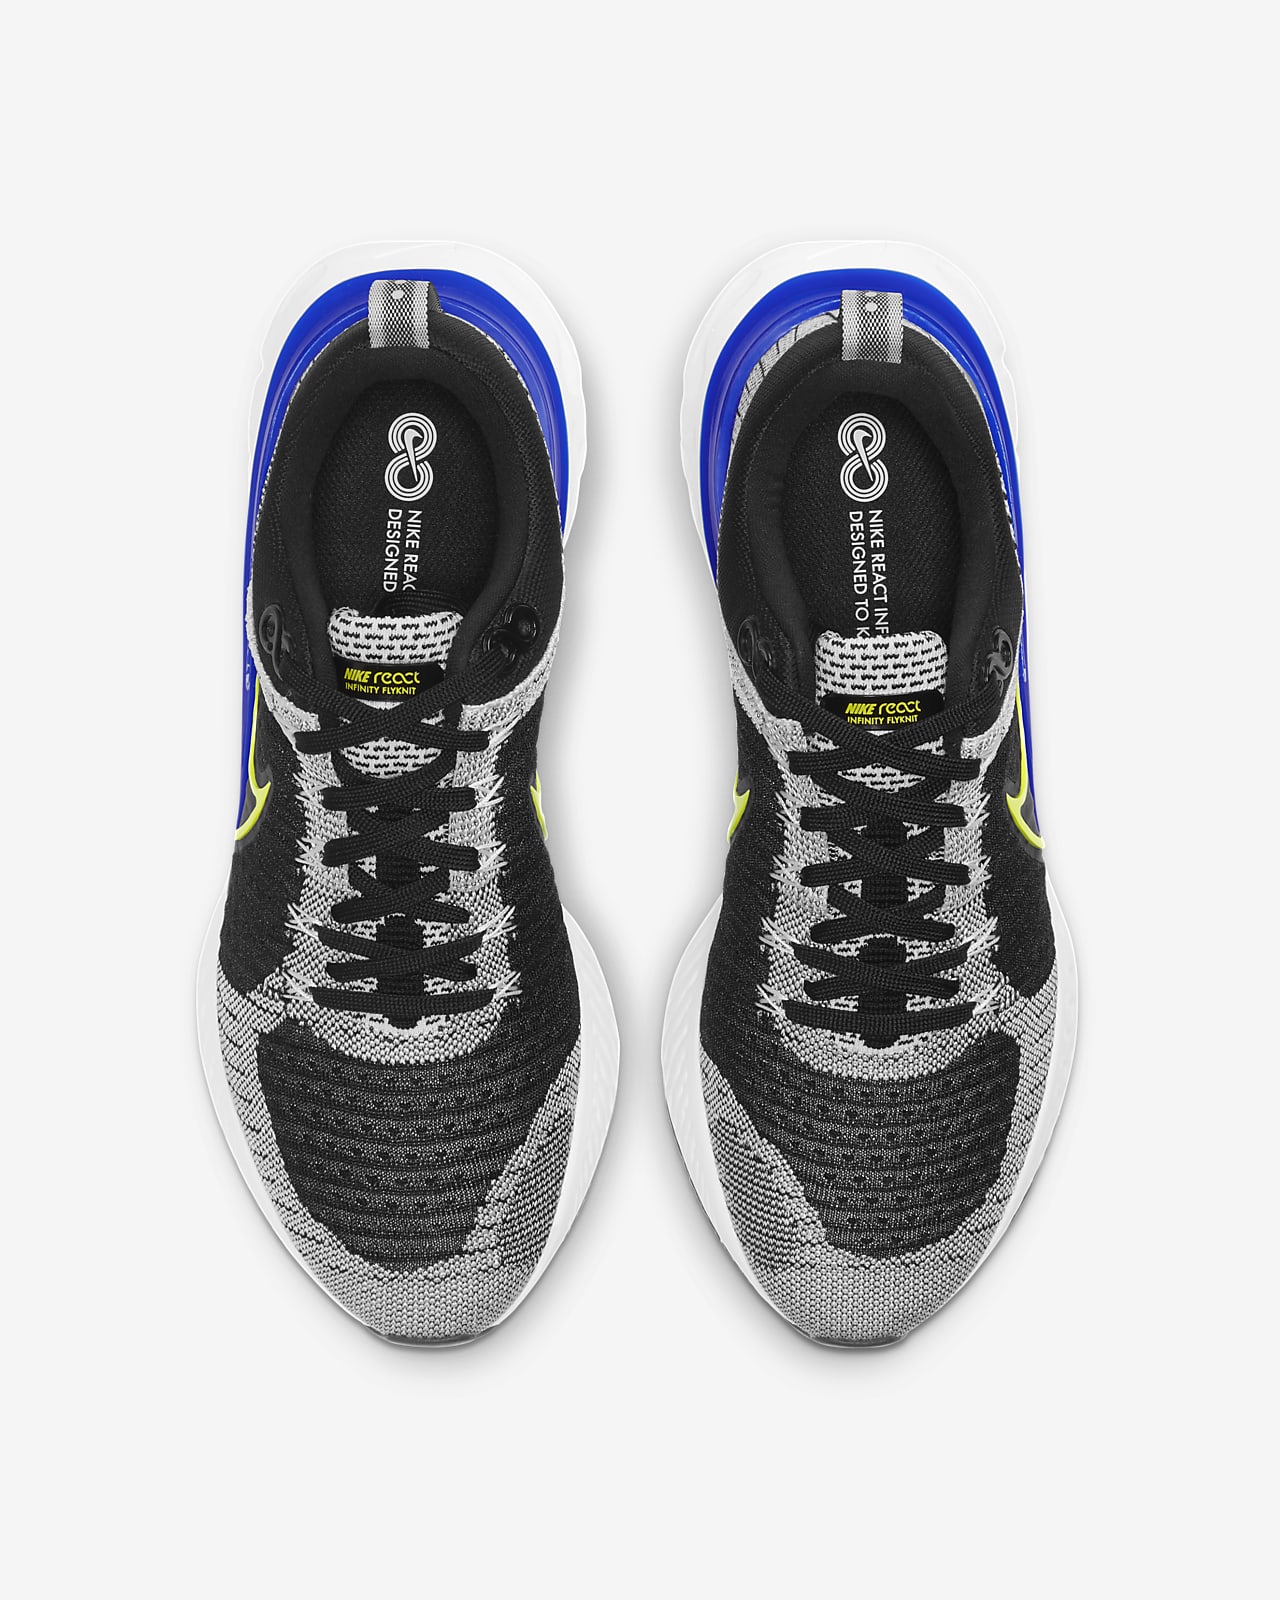 Om toevlucht te zoeken Overgave evenwicht Nike React Infinity 2 Men's Road Running Shoes. Nike.com